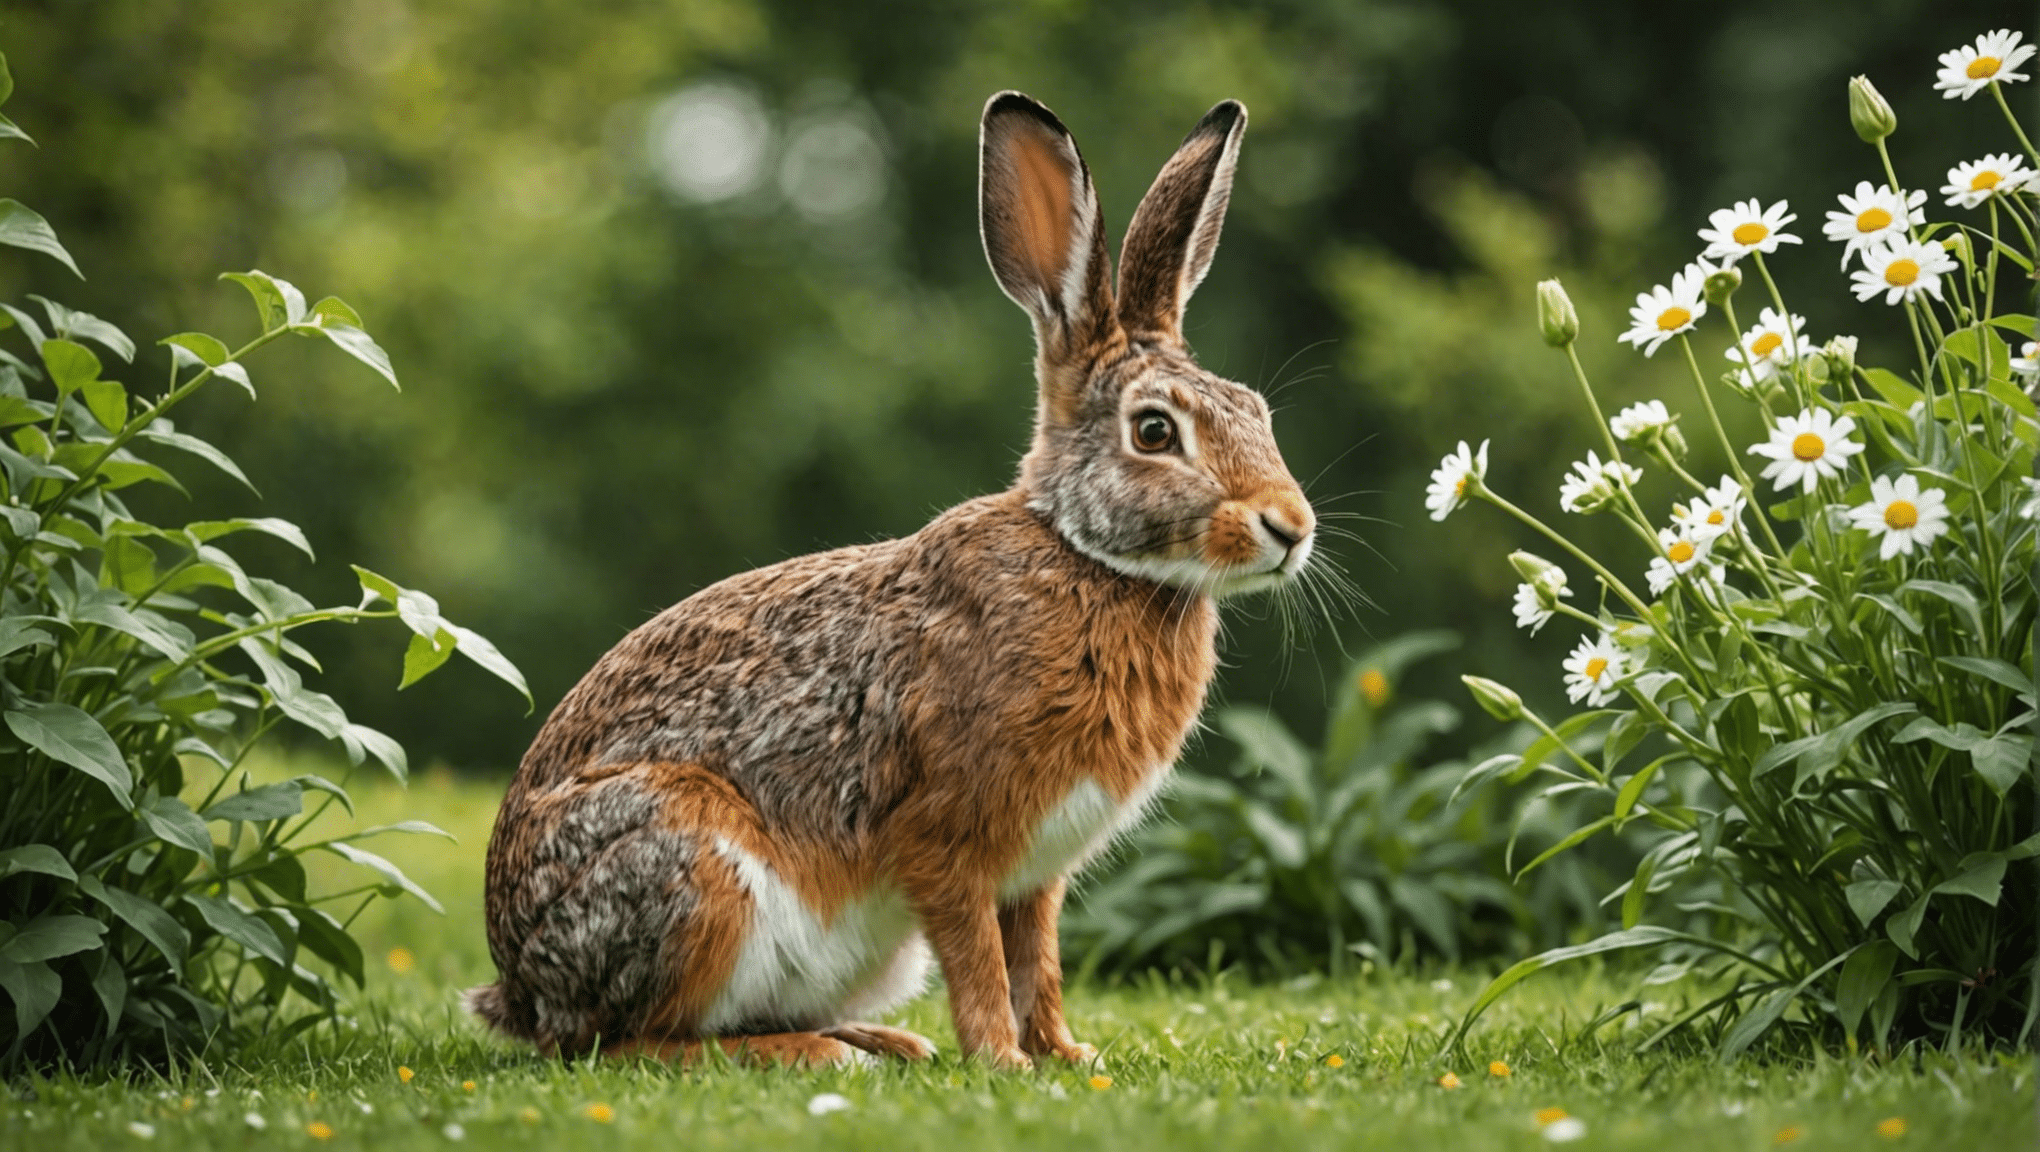 découvrez les distinctions entre les lièvres et les lapins dans cette exploration perspicace de leurs caractéristiques et comportements uniques.